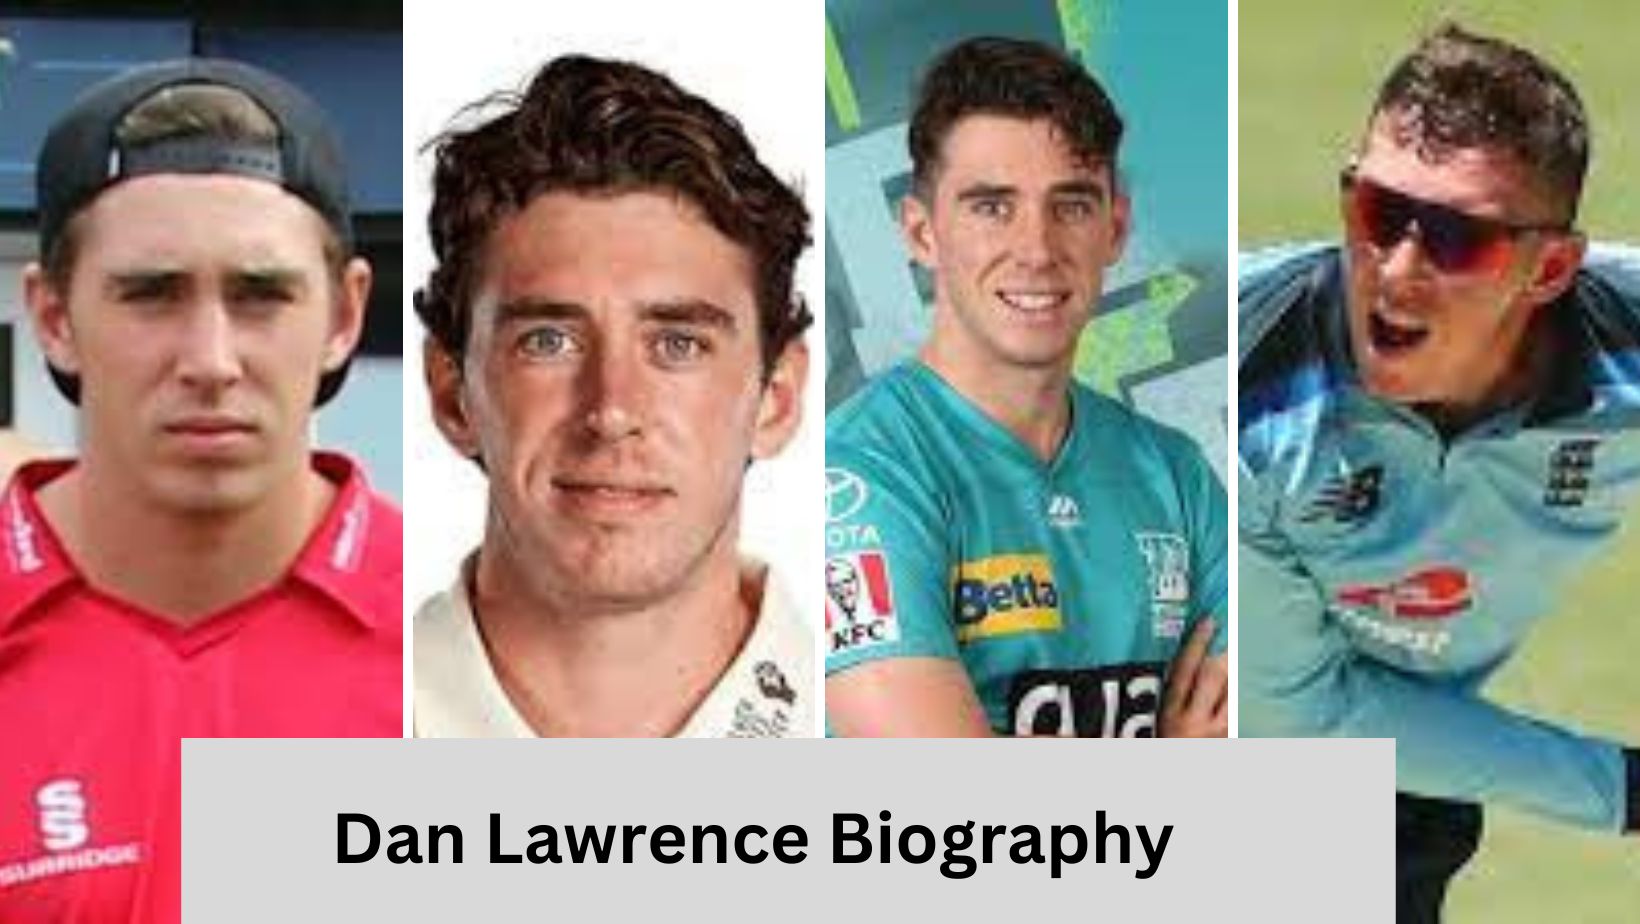 Dan Lawrence Biography